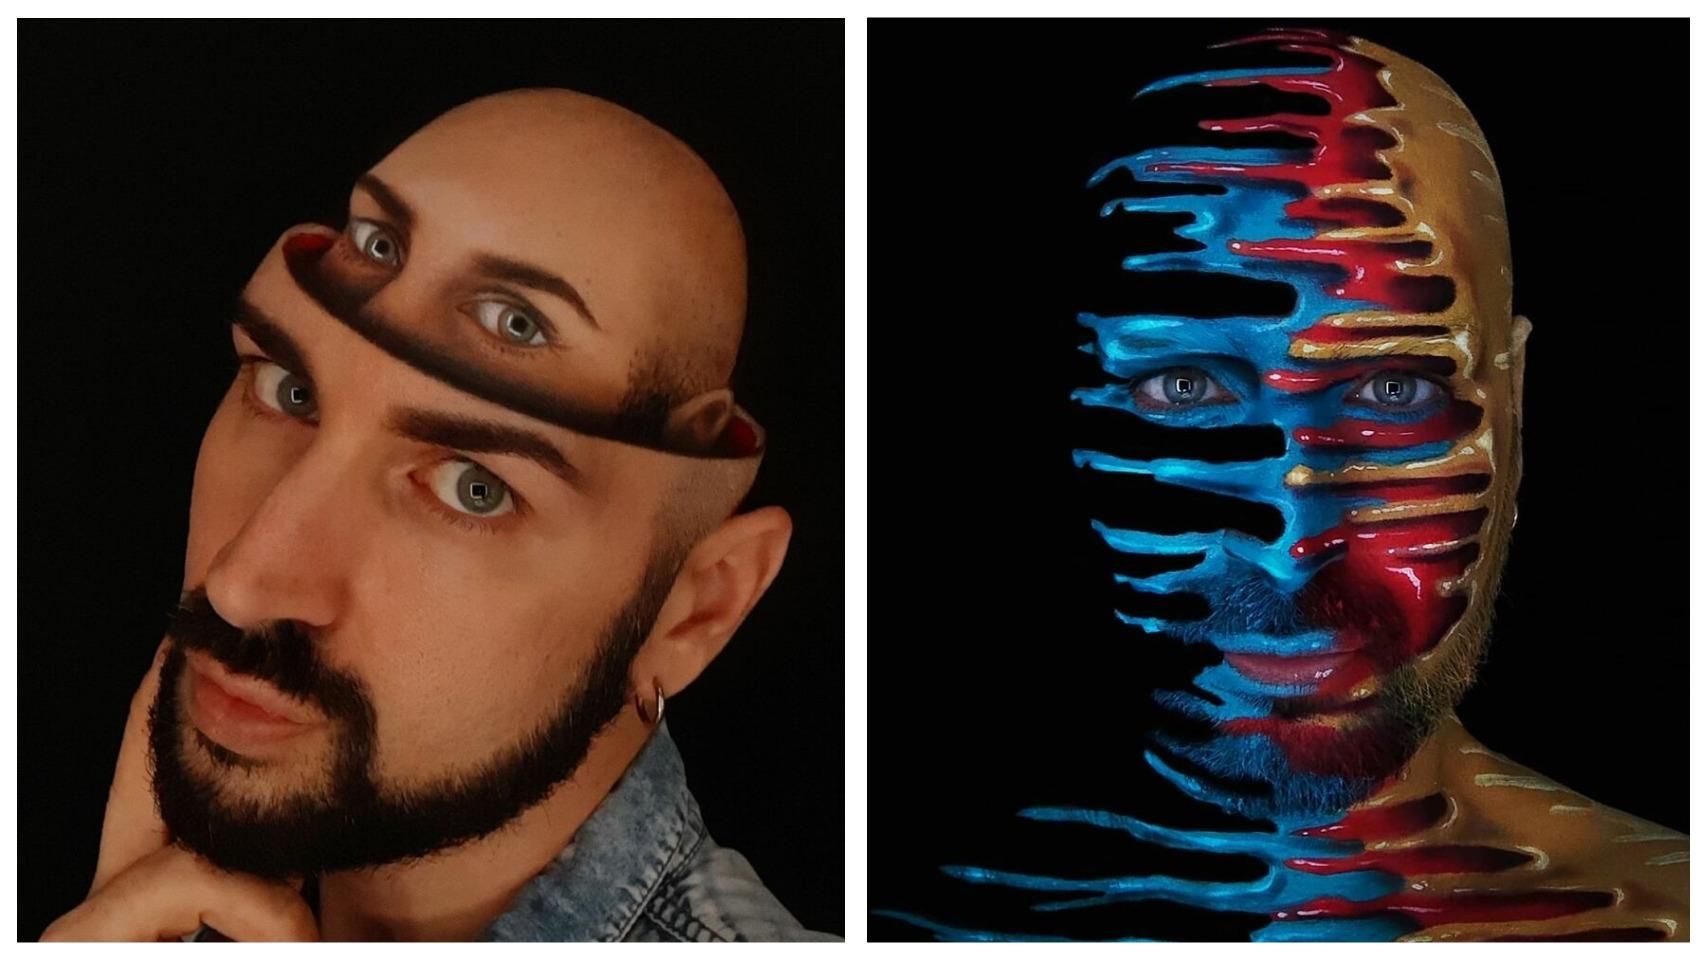 Тіло як полотно: італійський візажист створює дивовижні оптичні ілюзії на собі - Life